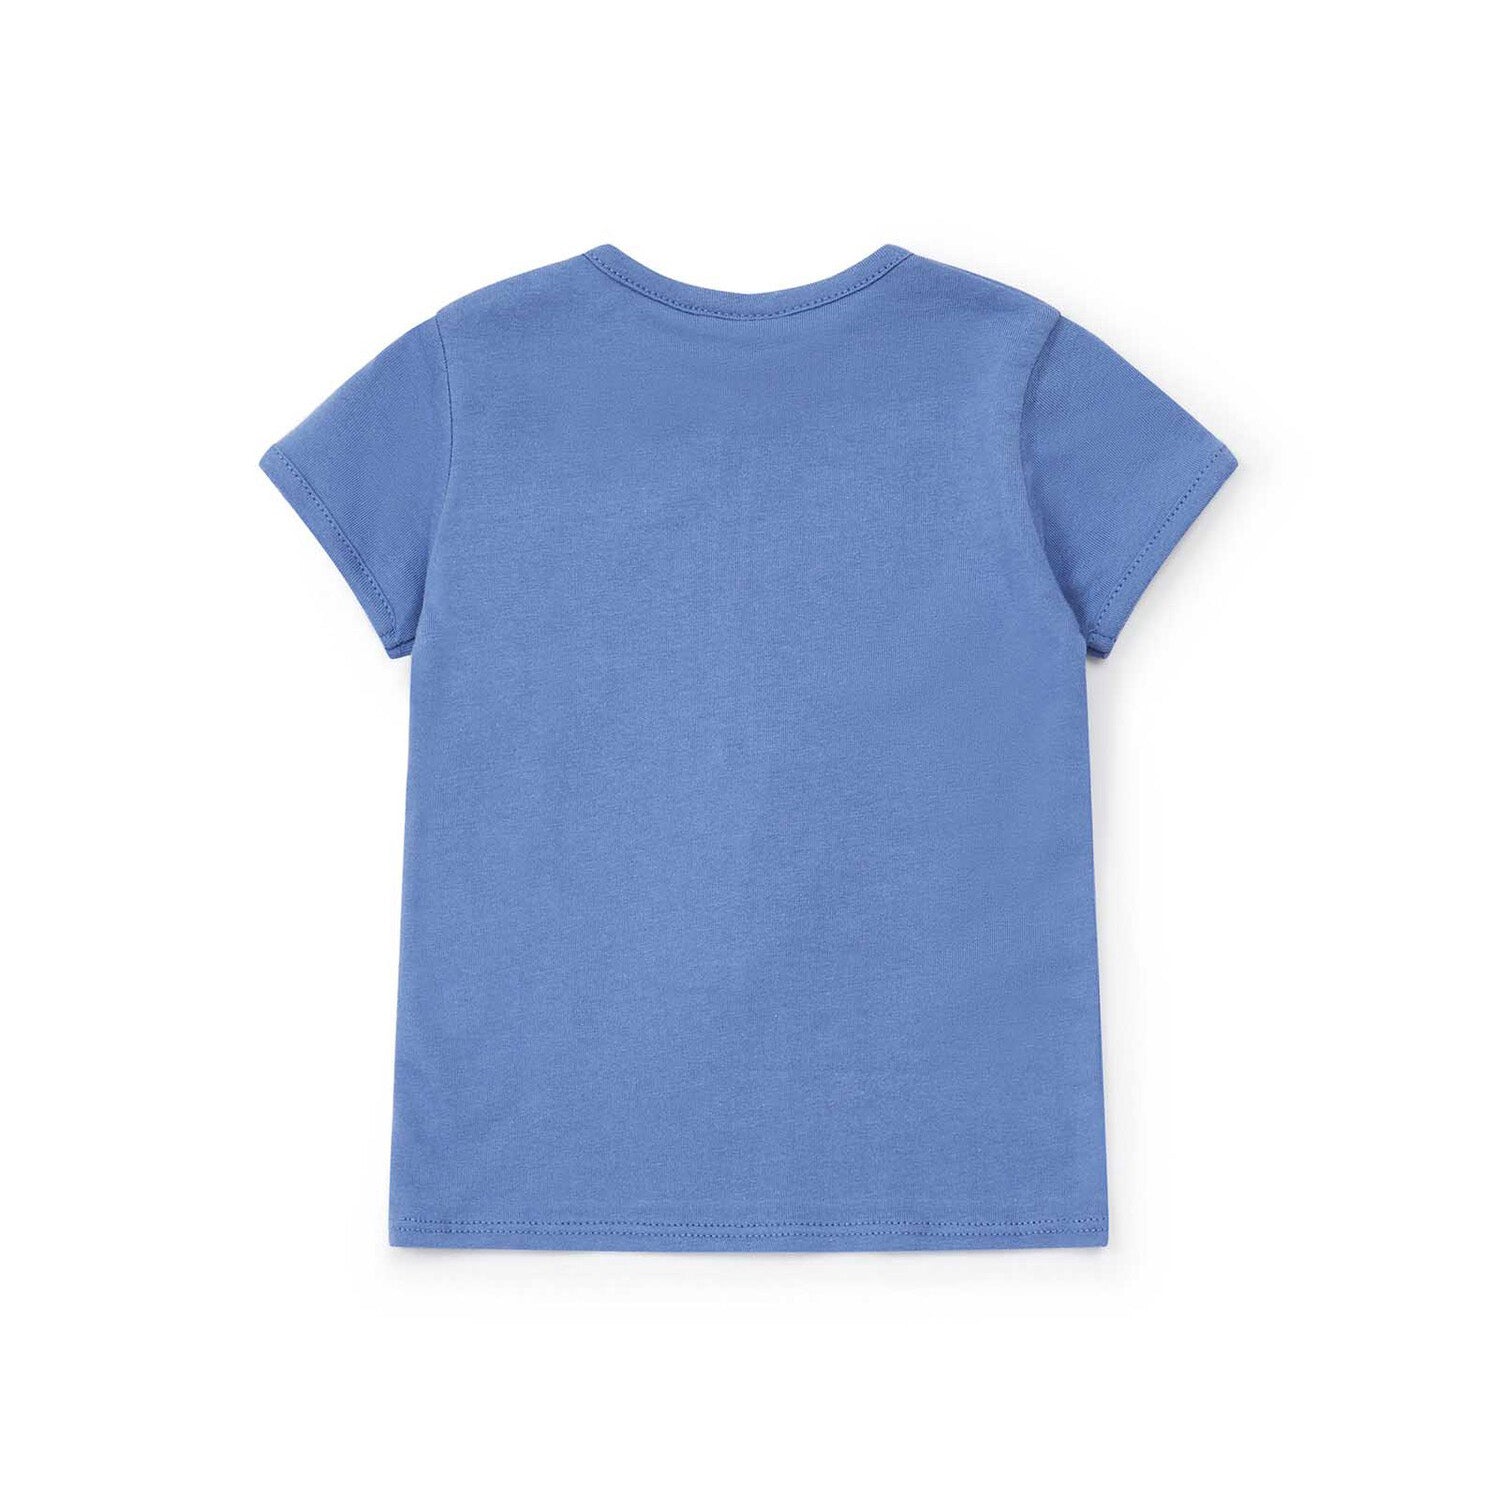 Baby Boys Blue Car Printing Cotton T-Shirt